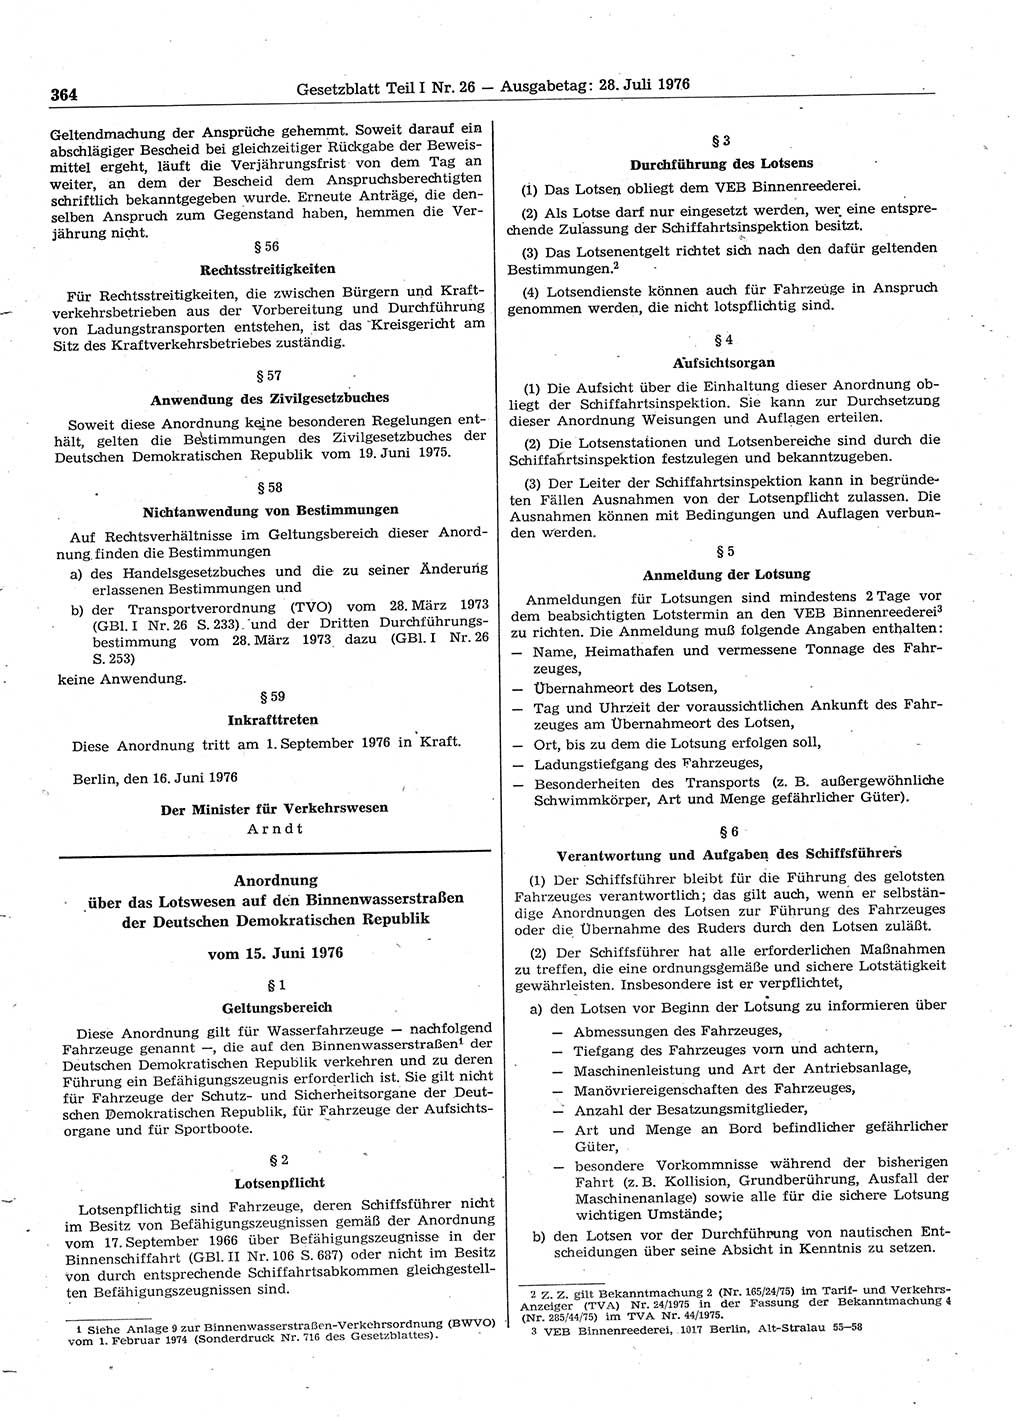 Gesetzblatt (GBl.) der Deutschen Demokratischen Republik (DDR) Teil Ⅰ 1976, Seite 364 (GBl. DDR Ⅰ 1976, S. 364)